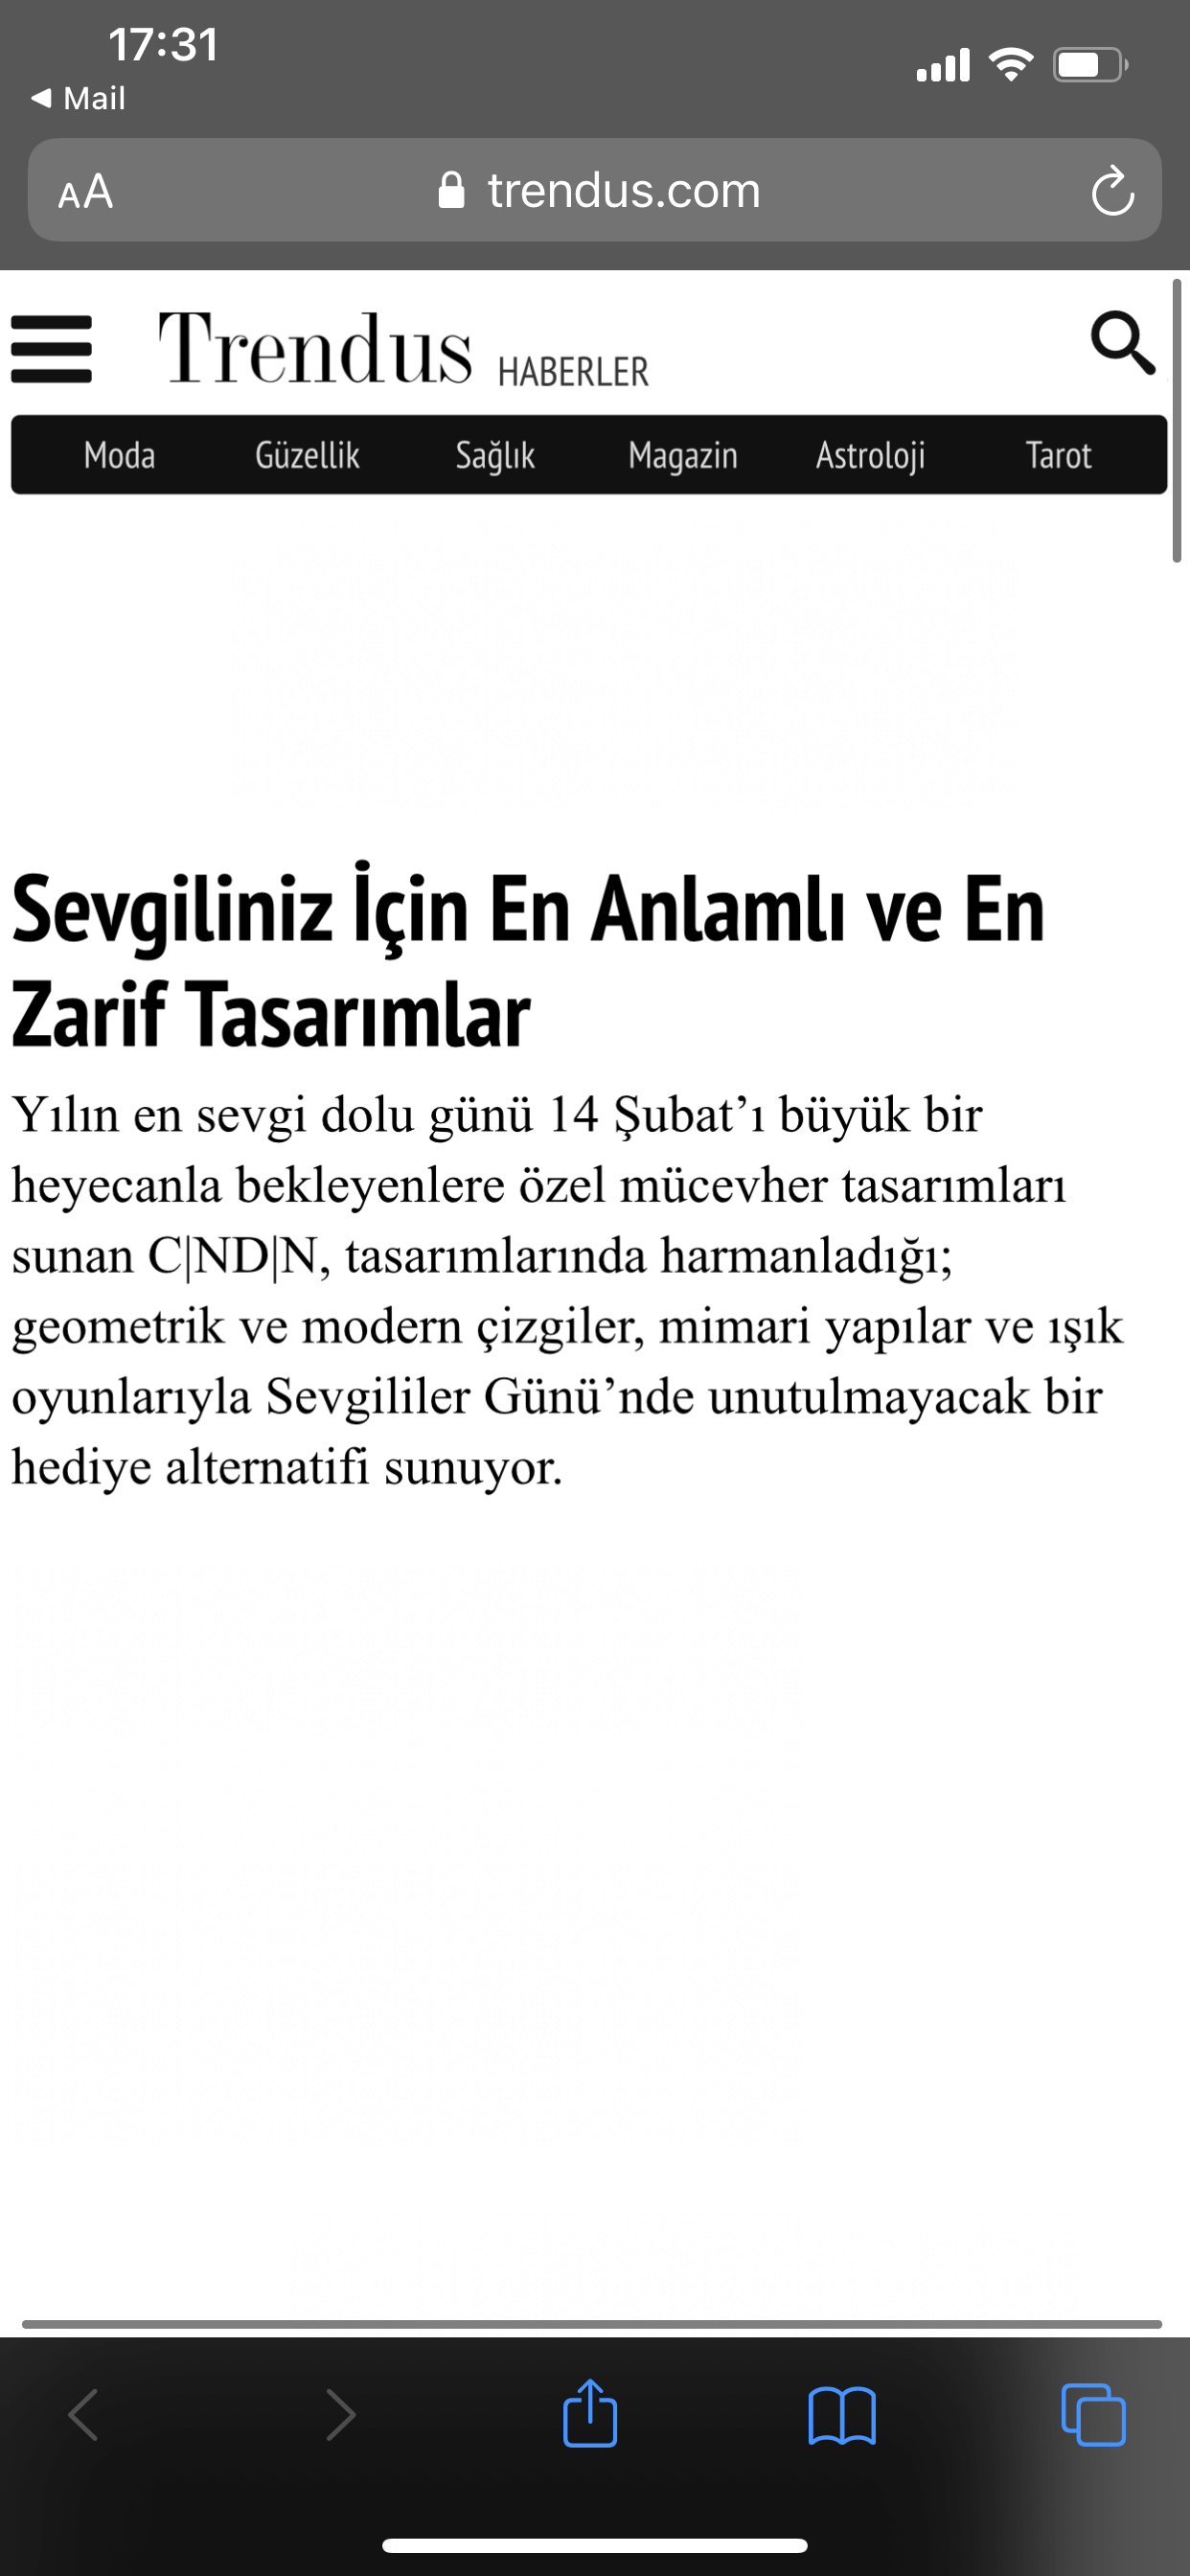 CNDN - Basın